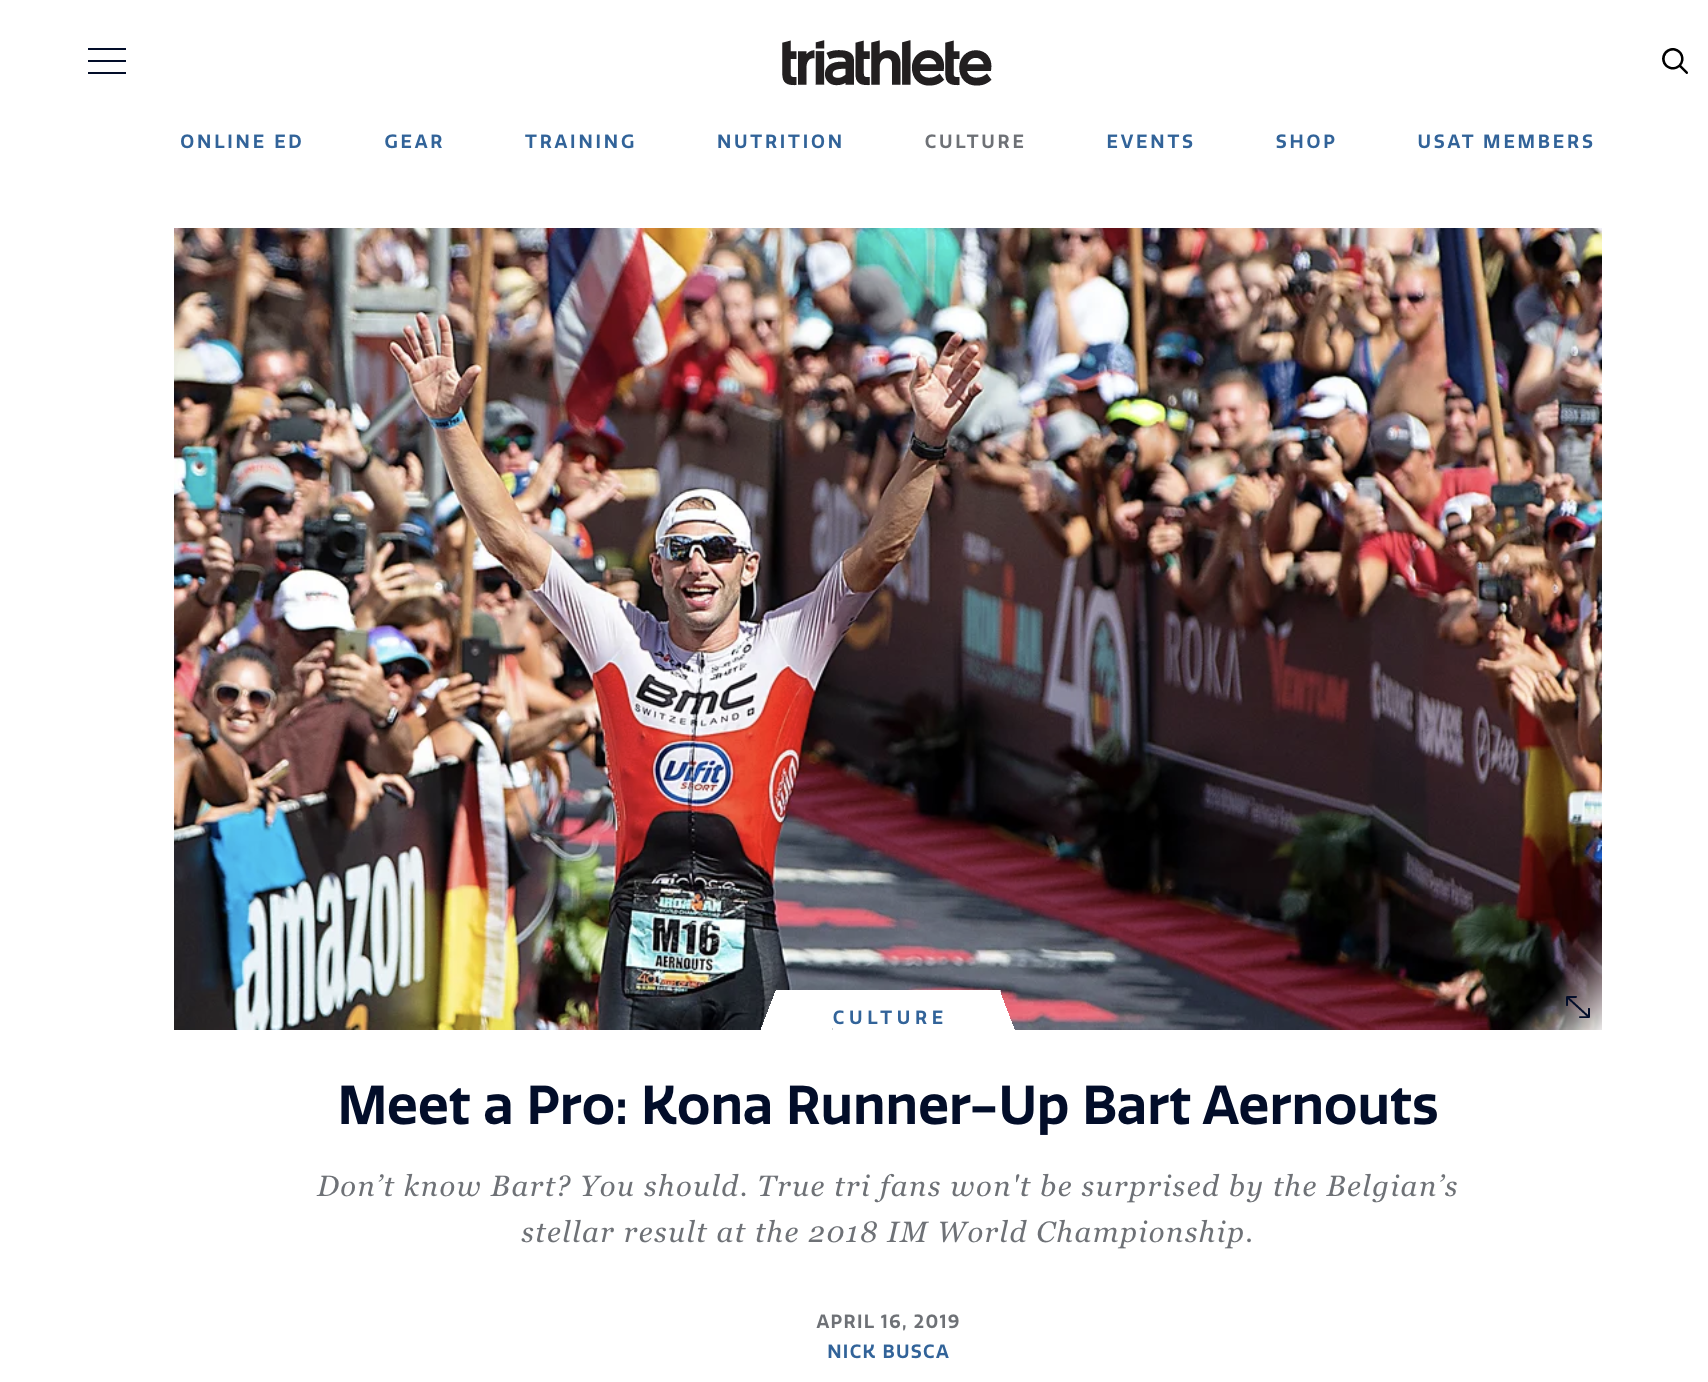 Meet a Pro: Kona Runner-Up Bart Aernouts